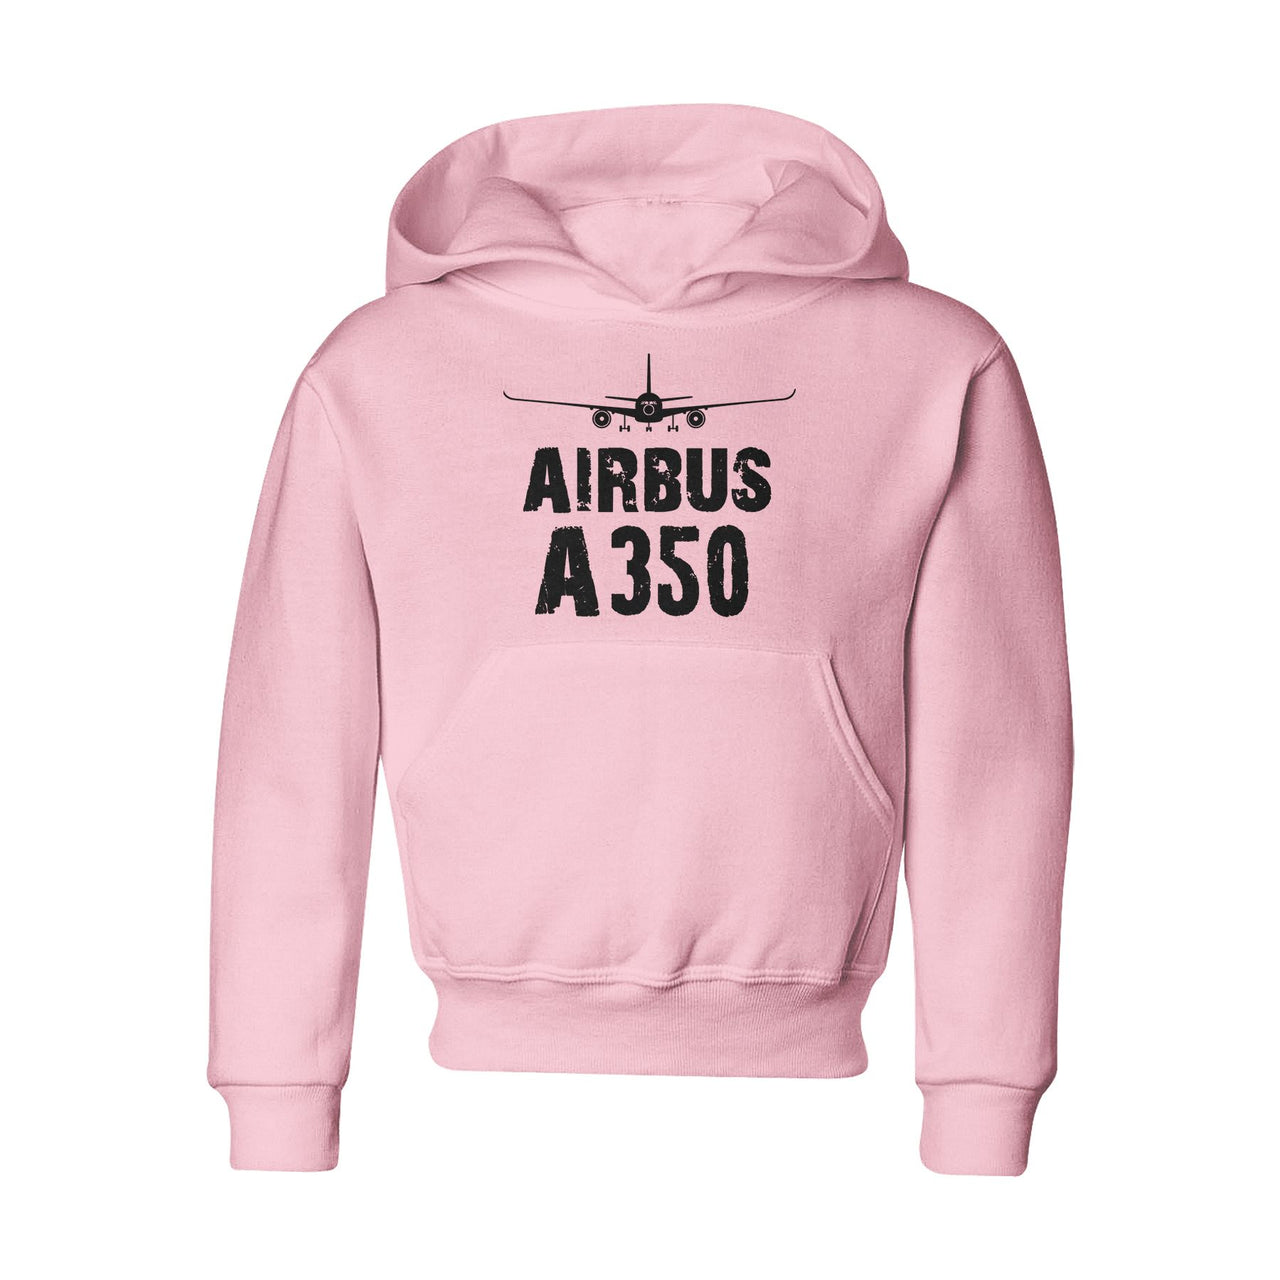 Airbus A350 & Plane Designed "CHILDREN" Hoodies